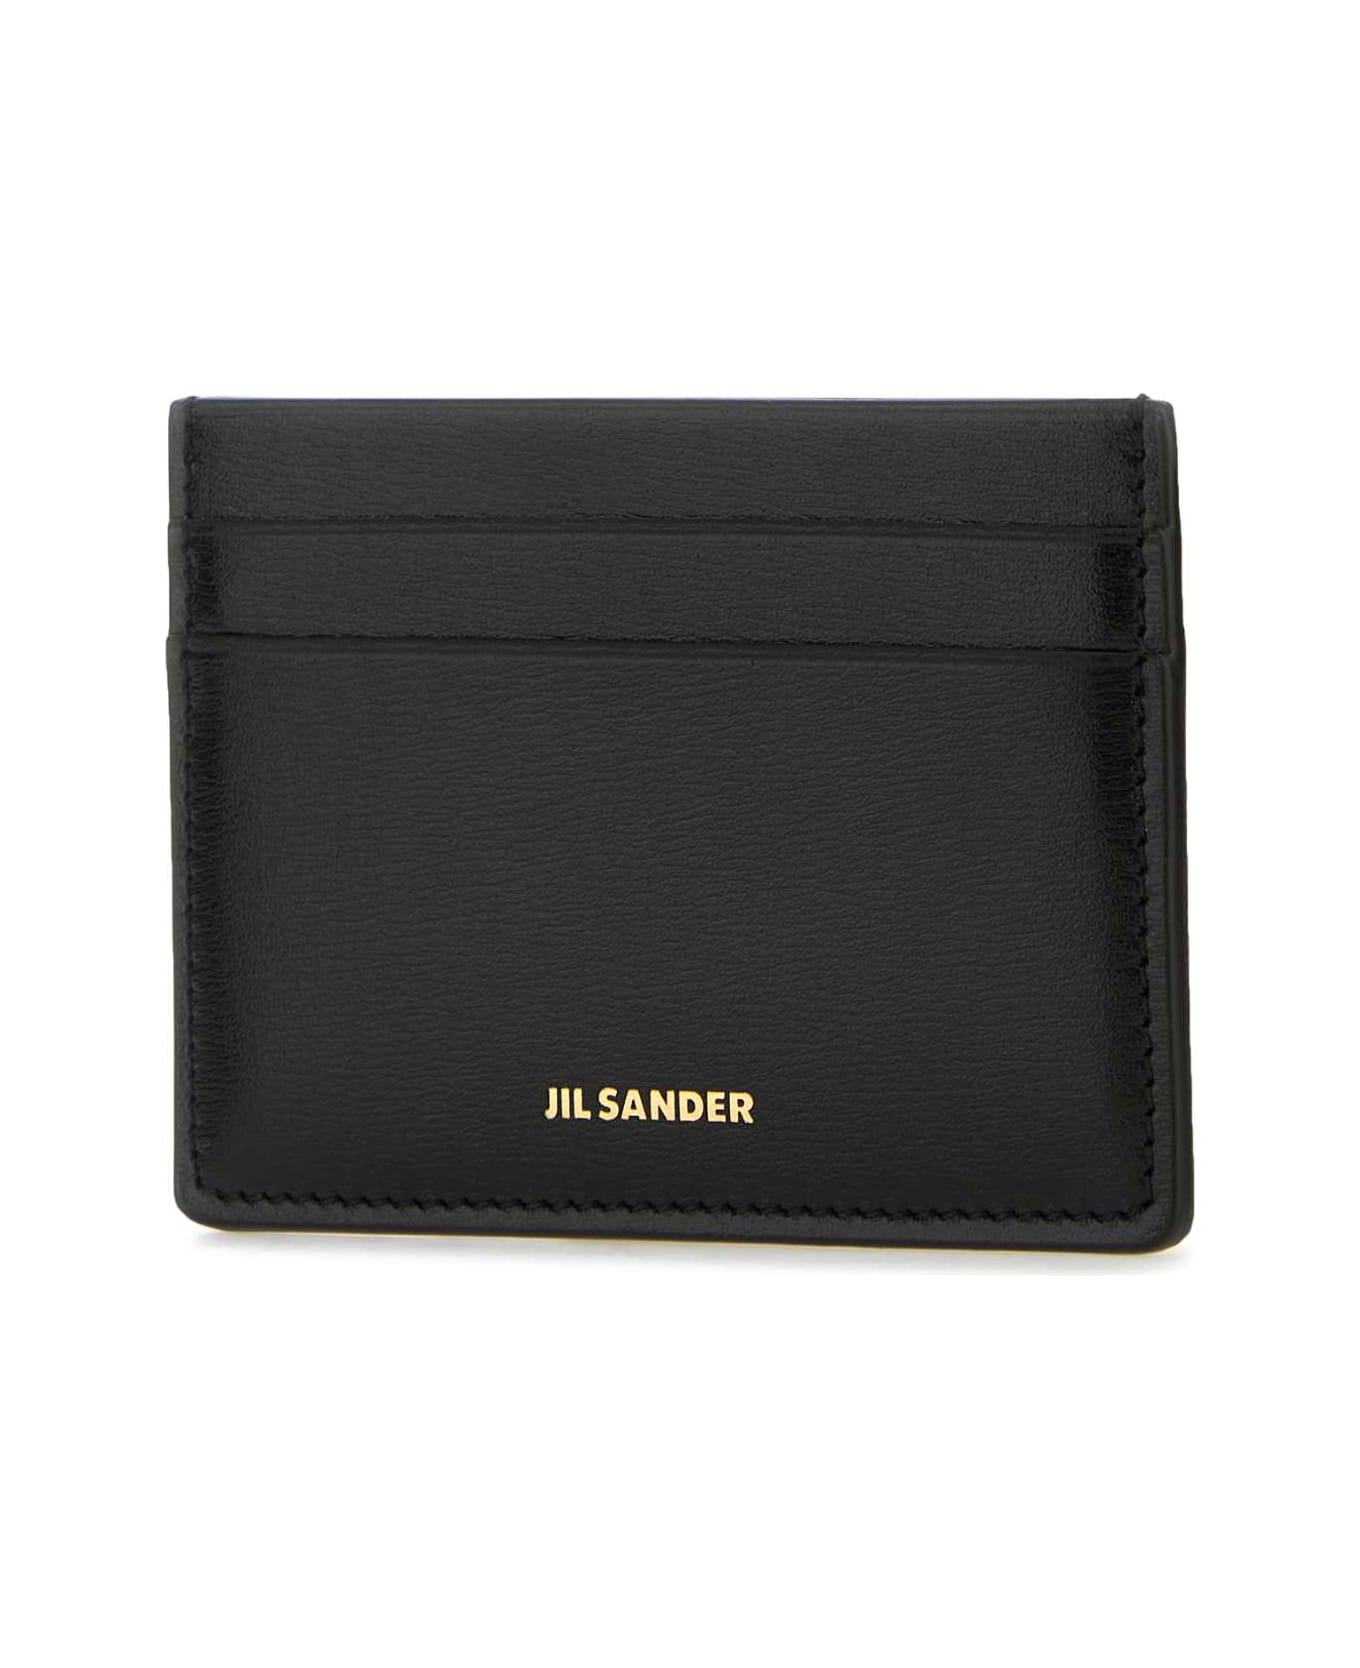 Jil Sander Black Leather Card Holder - 001